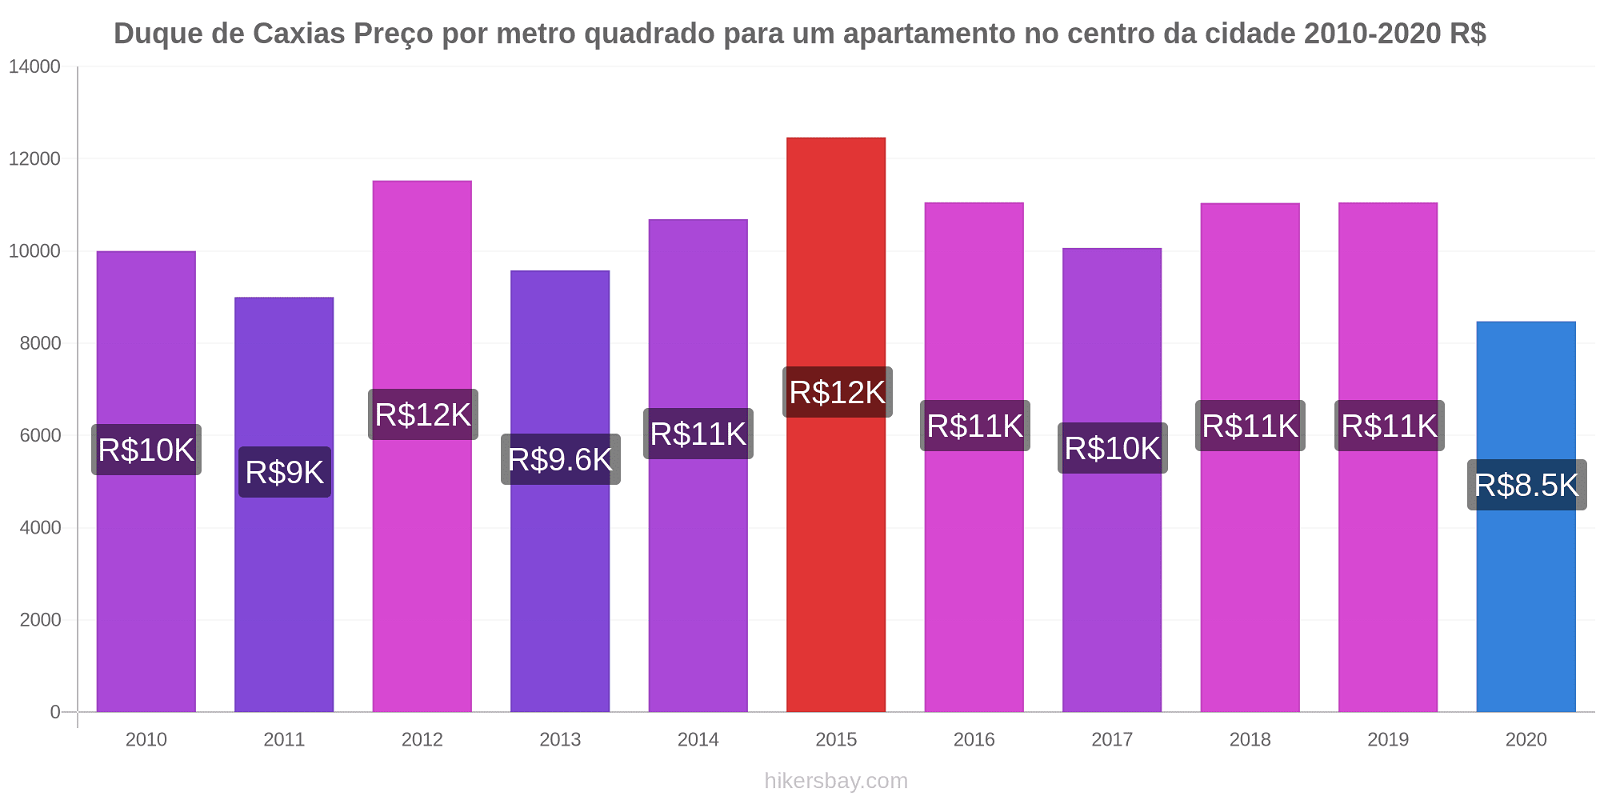 Duque de Caxias variação de preço Preço por metro quadrado para um apartamento no centro da cidade hikersbay.com